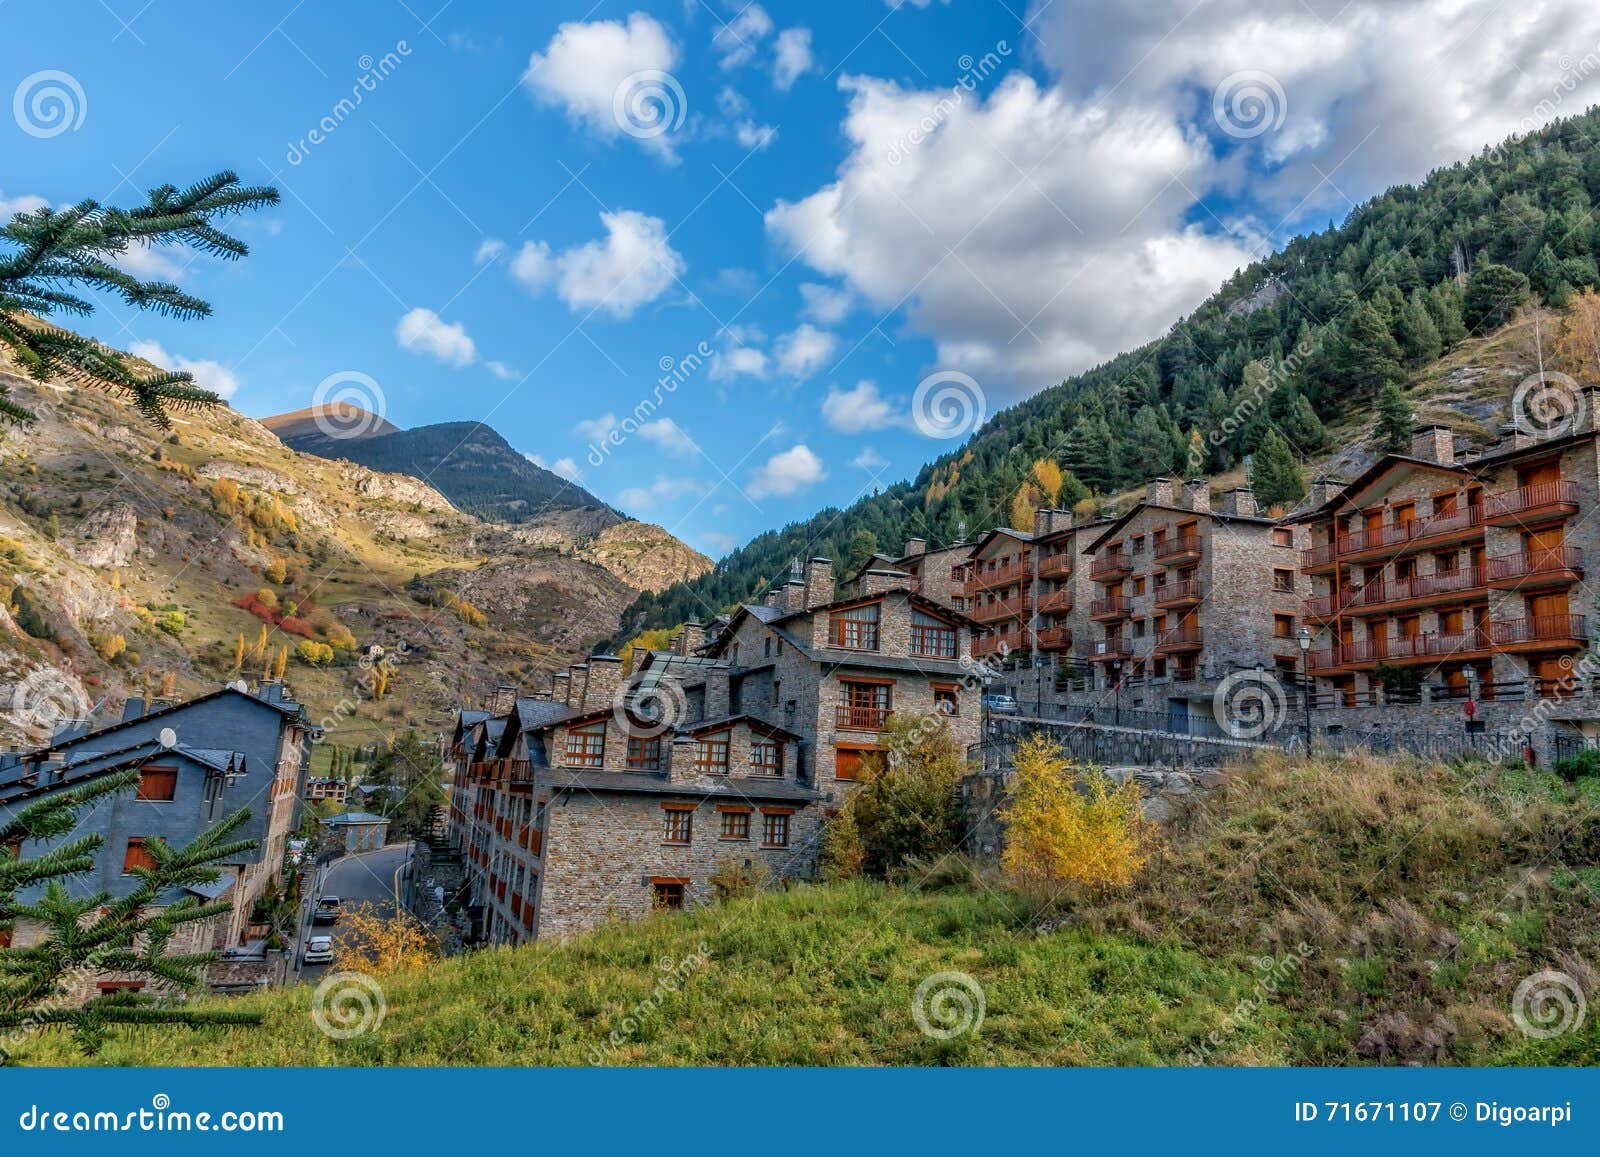 Andorra Landscape Stock Photo - Image: 71671107